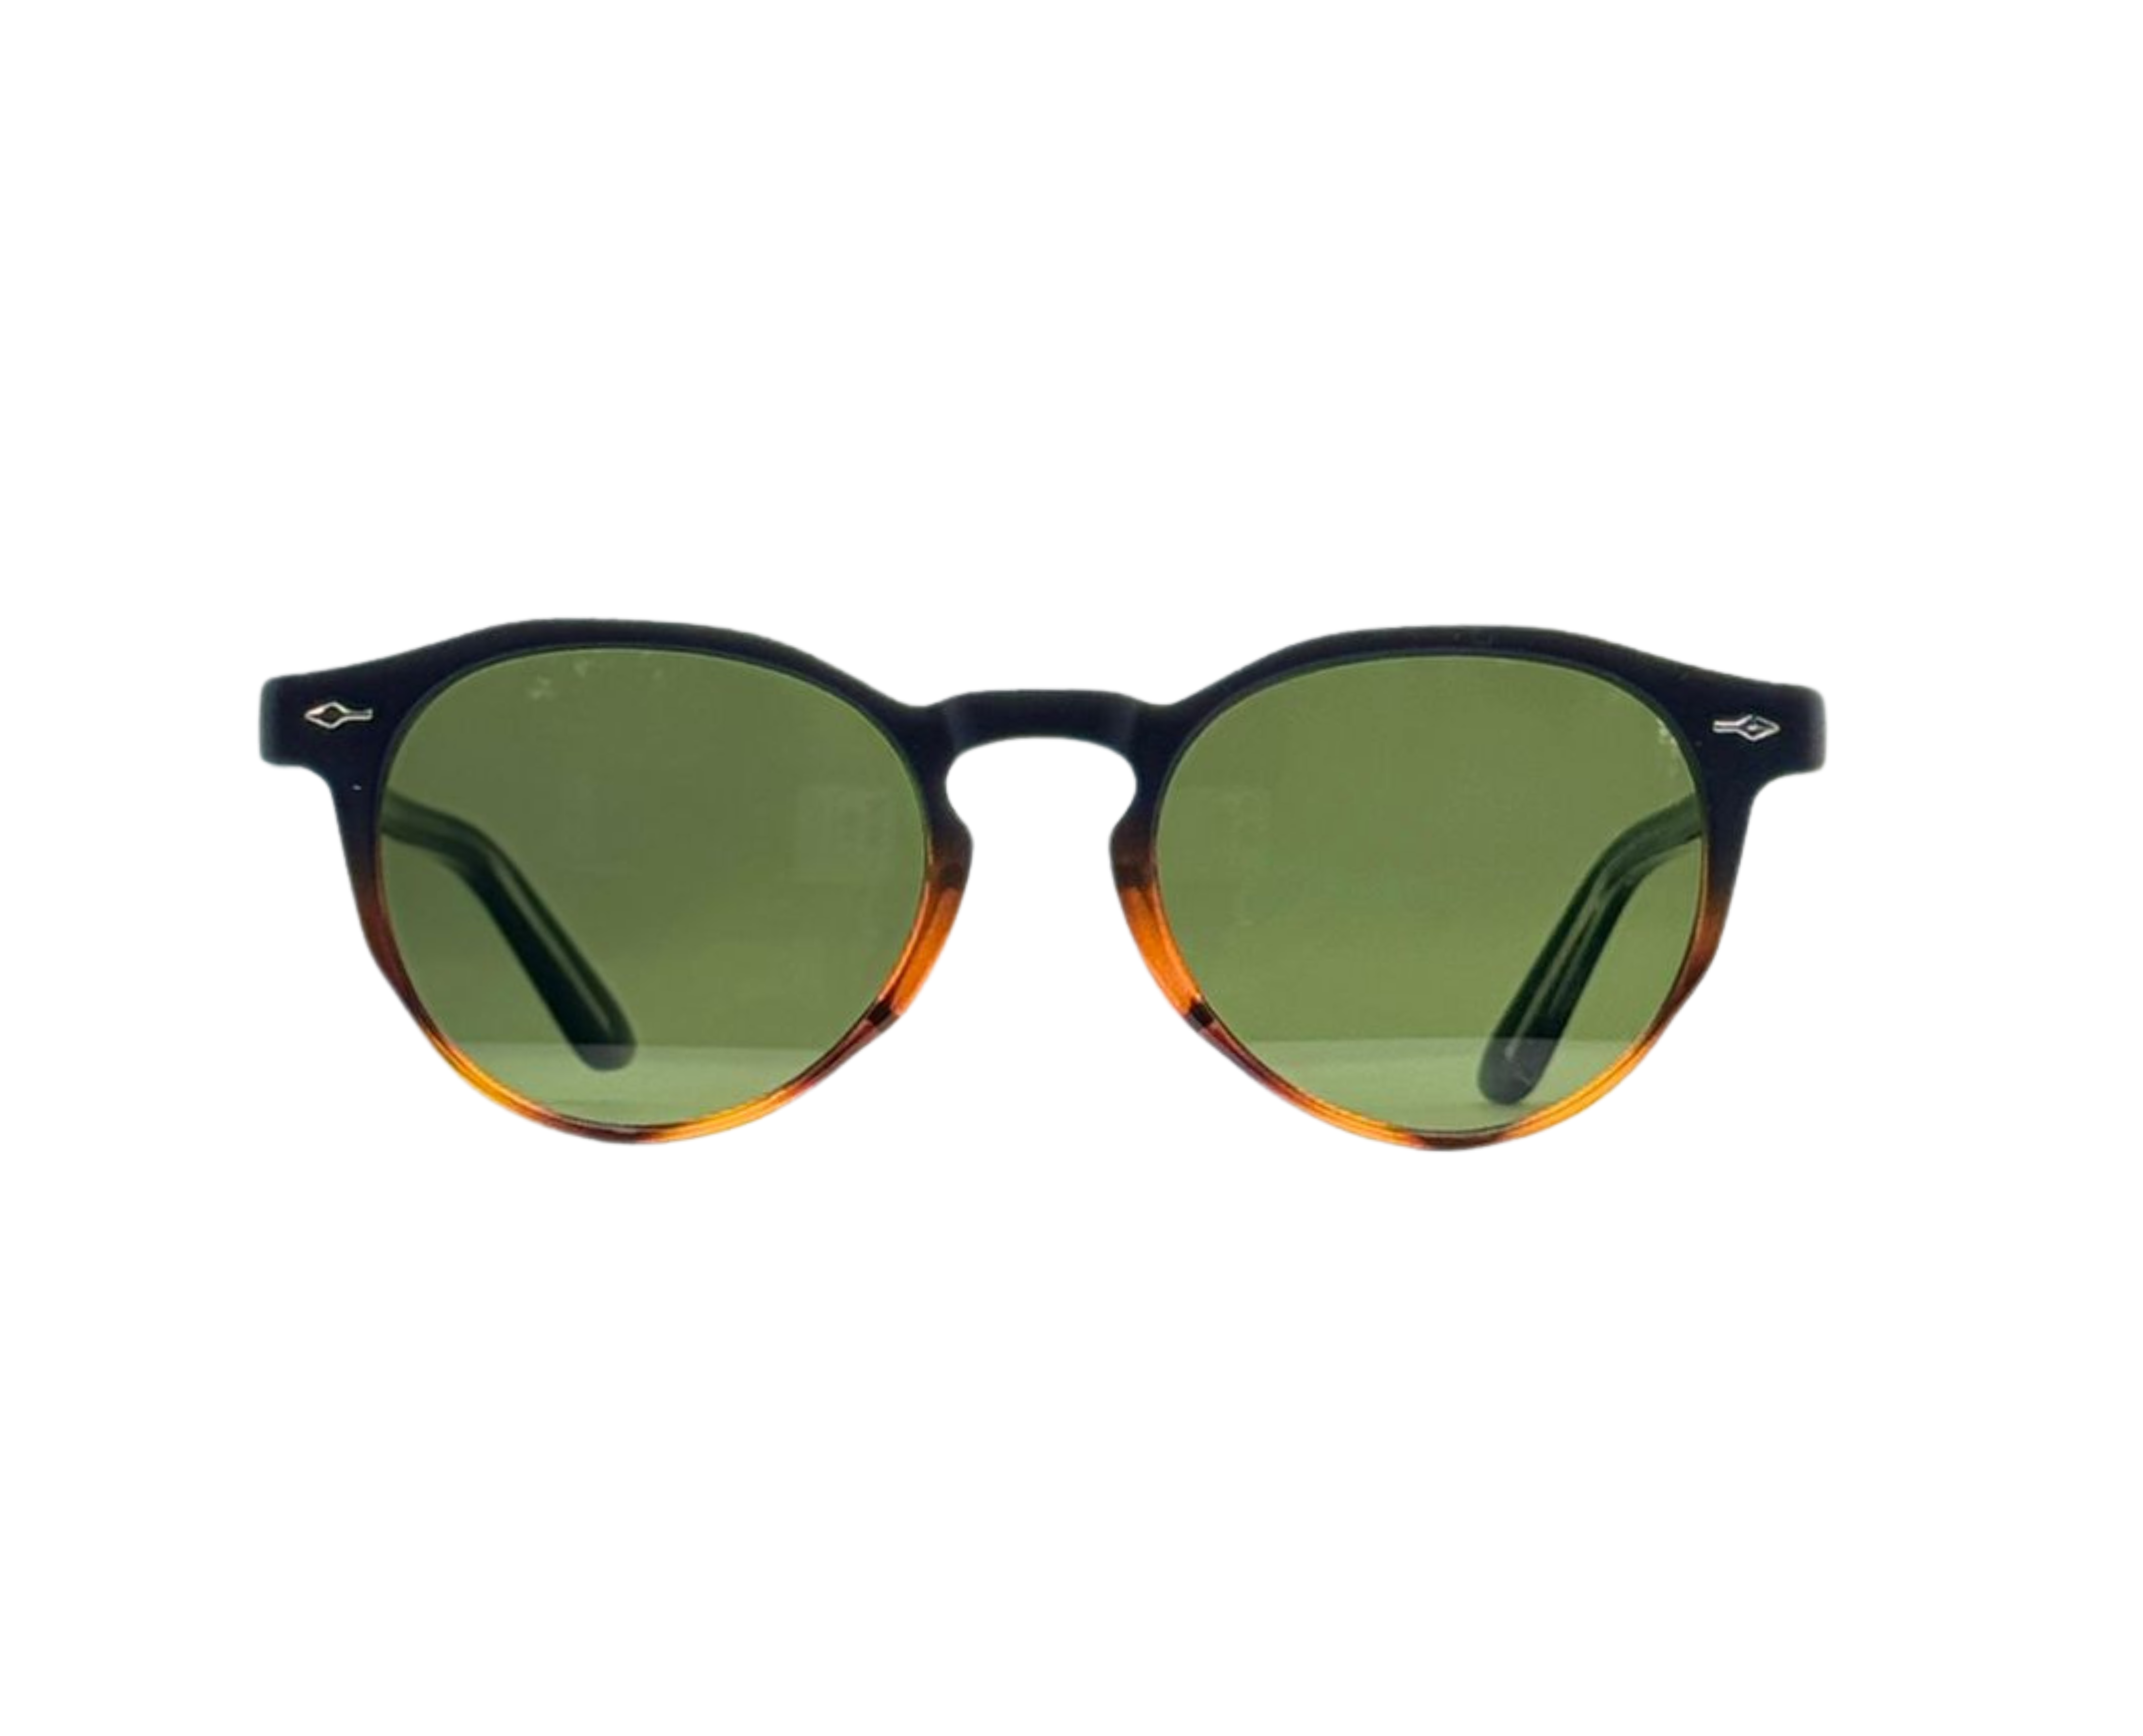 NS Luxury - 9822 - Black Tortoise - Sunglasses